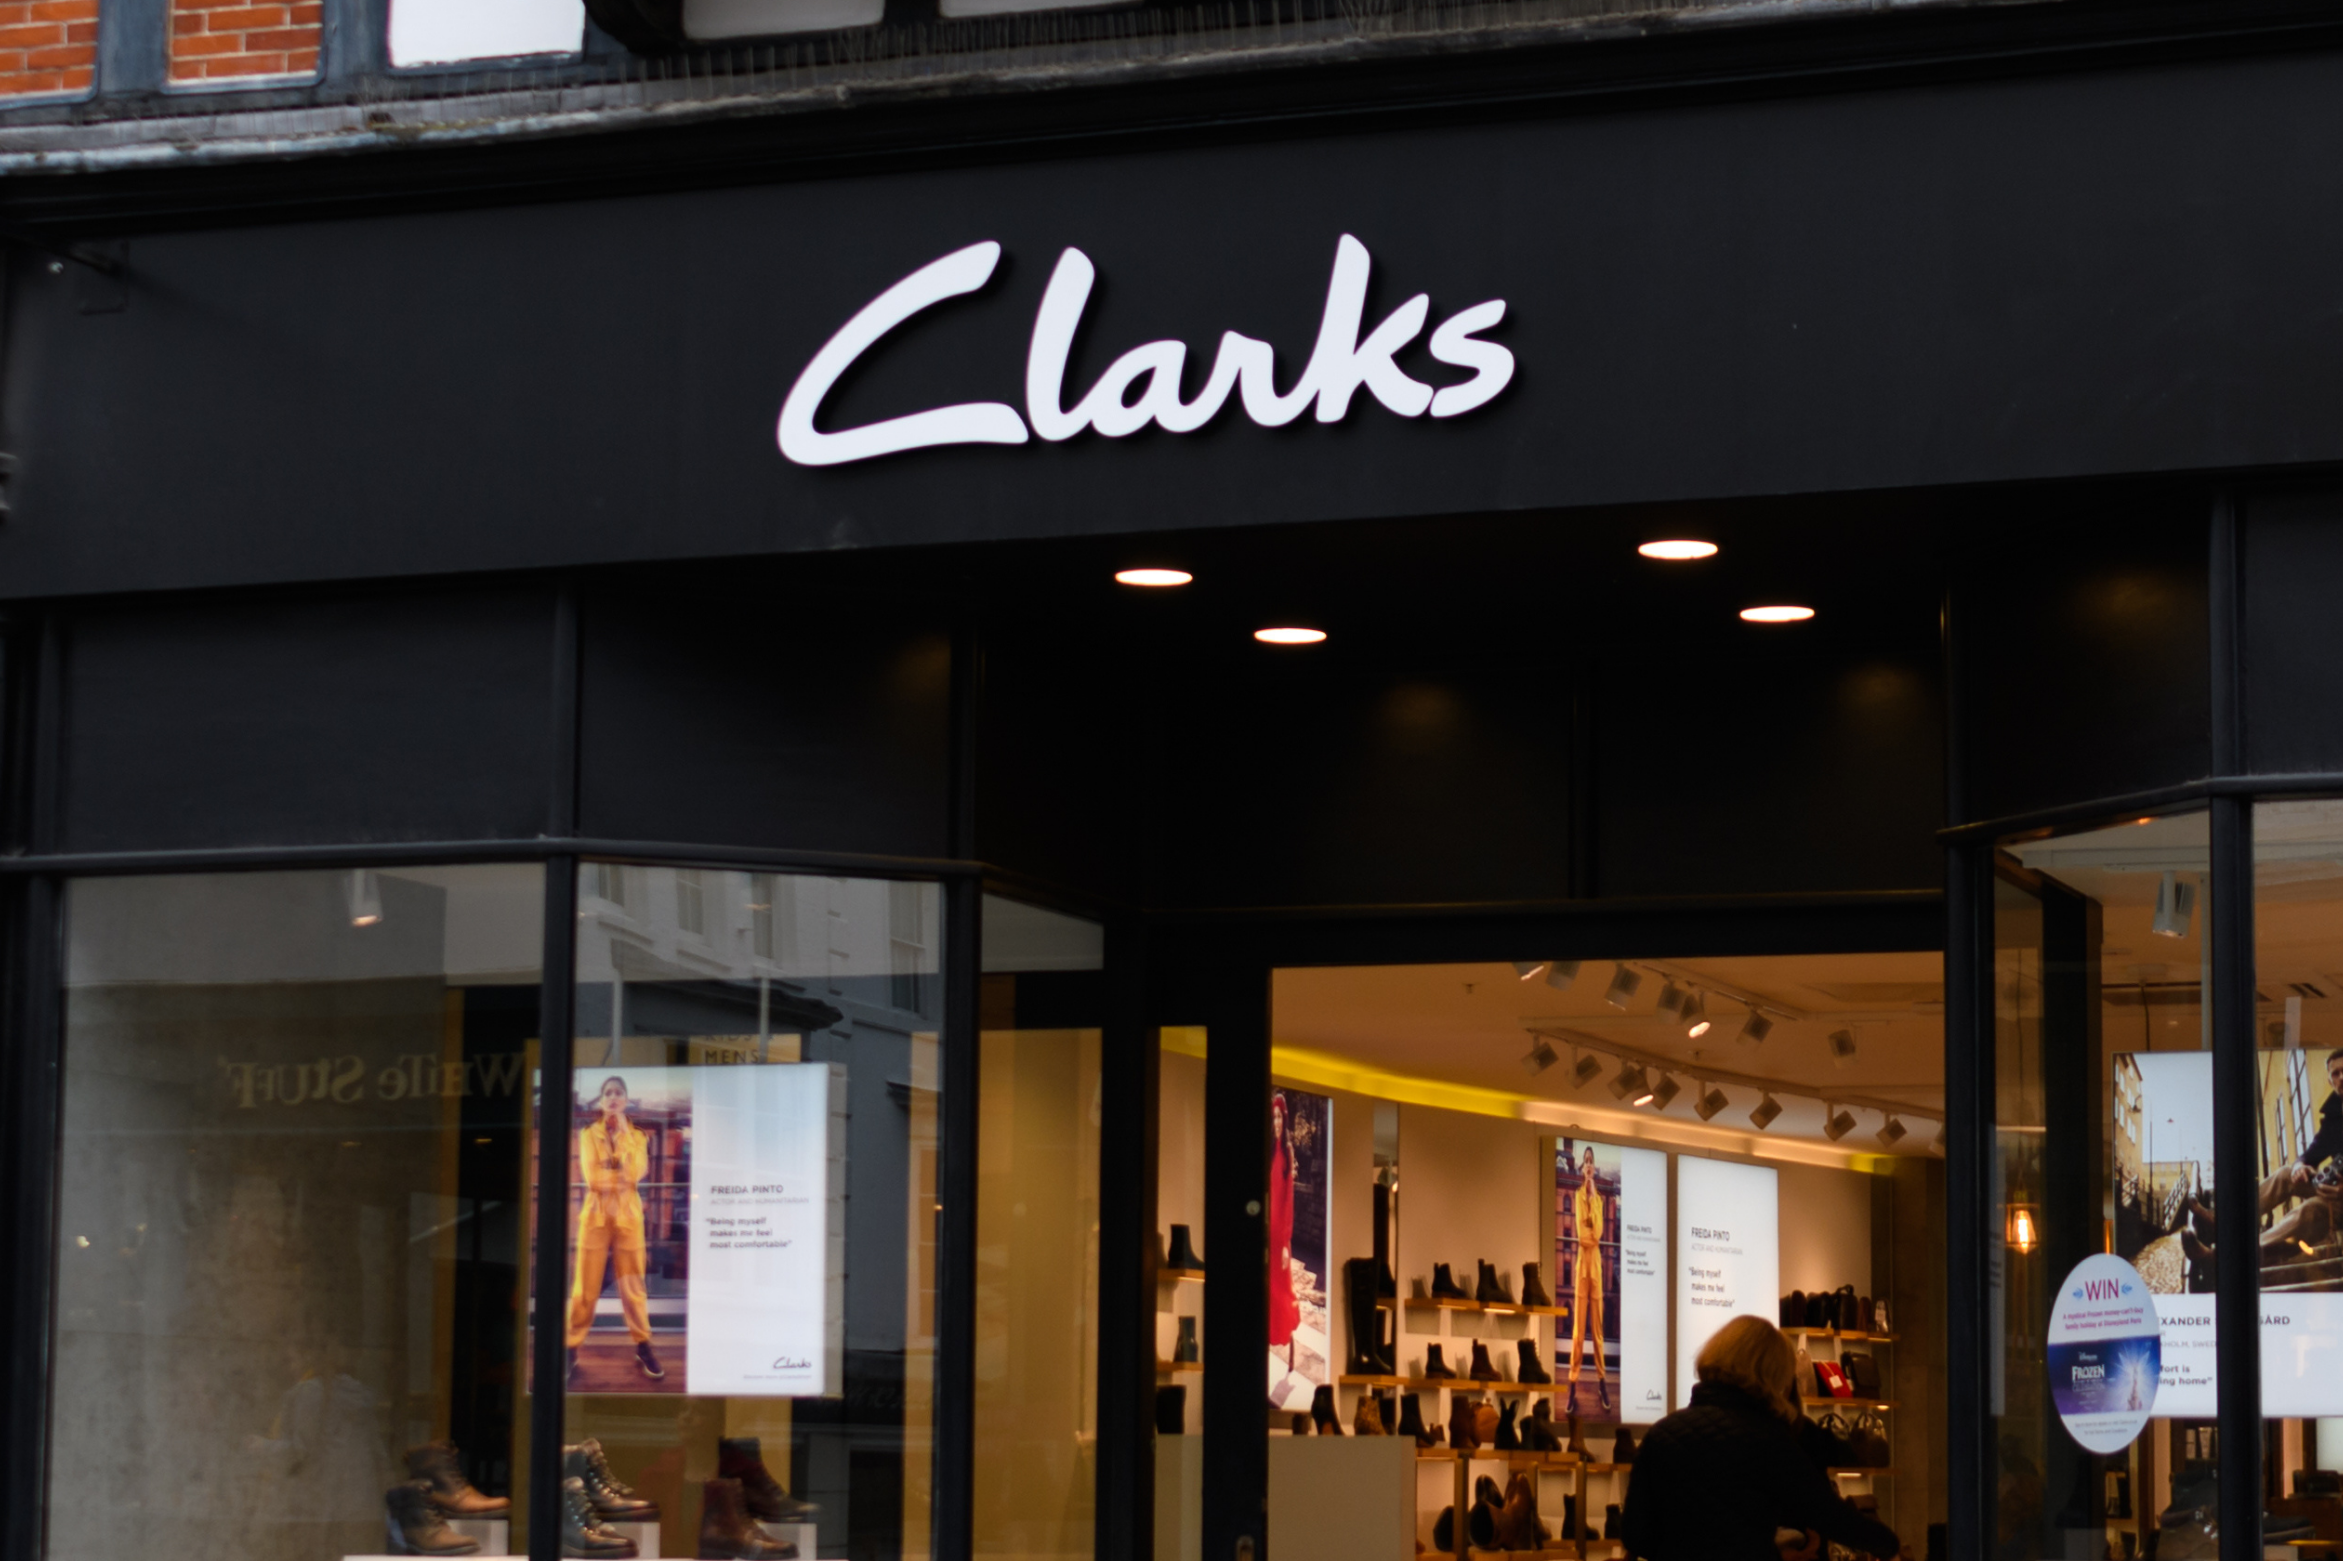 clarks sale shop glasgow